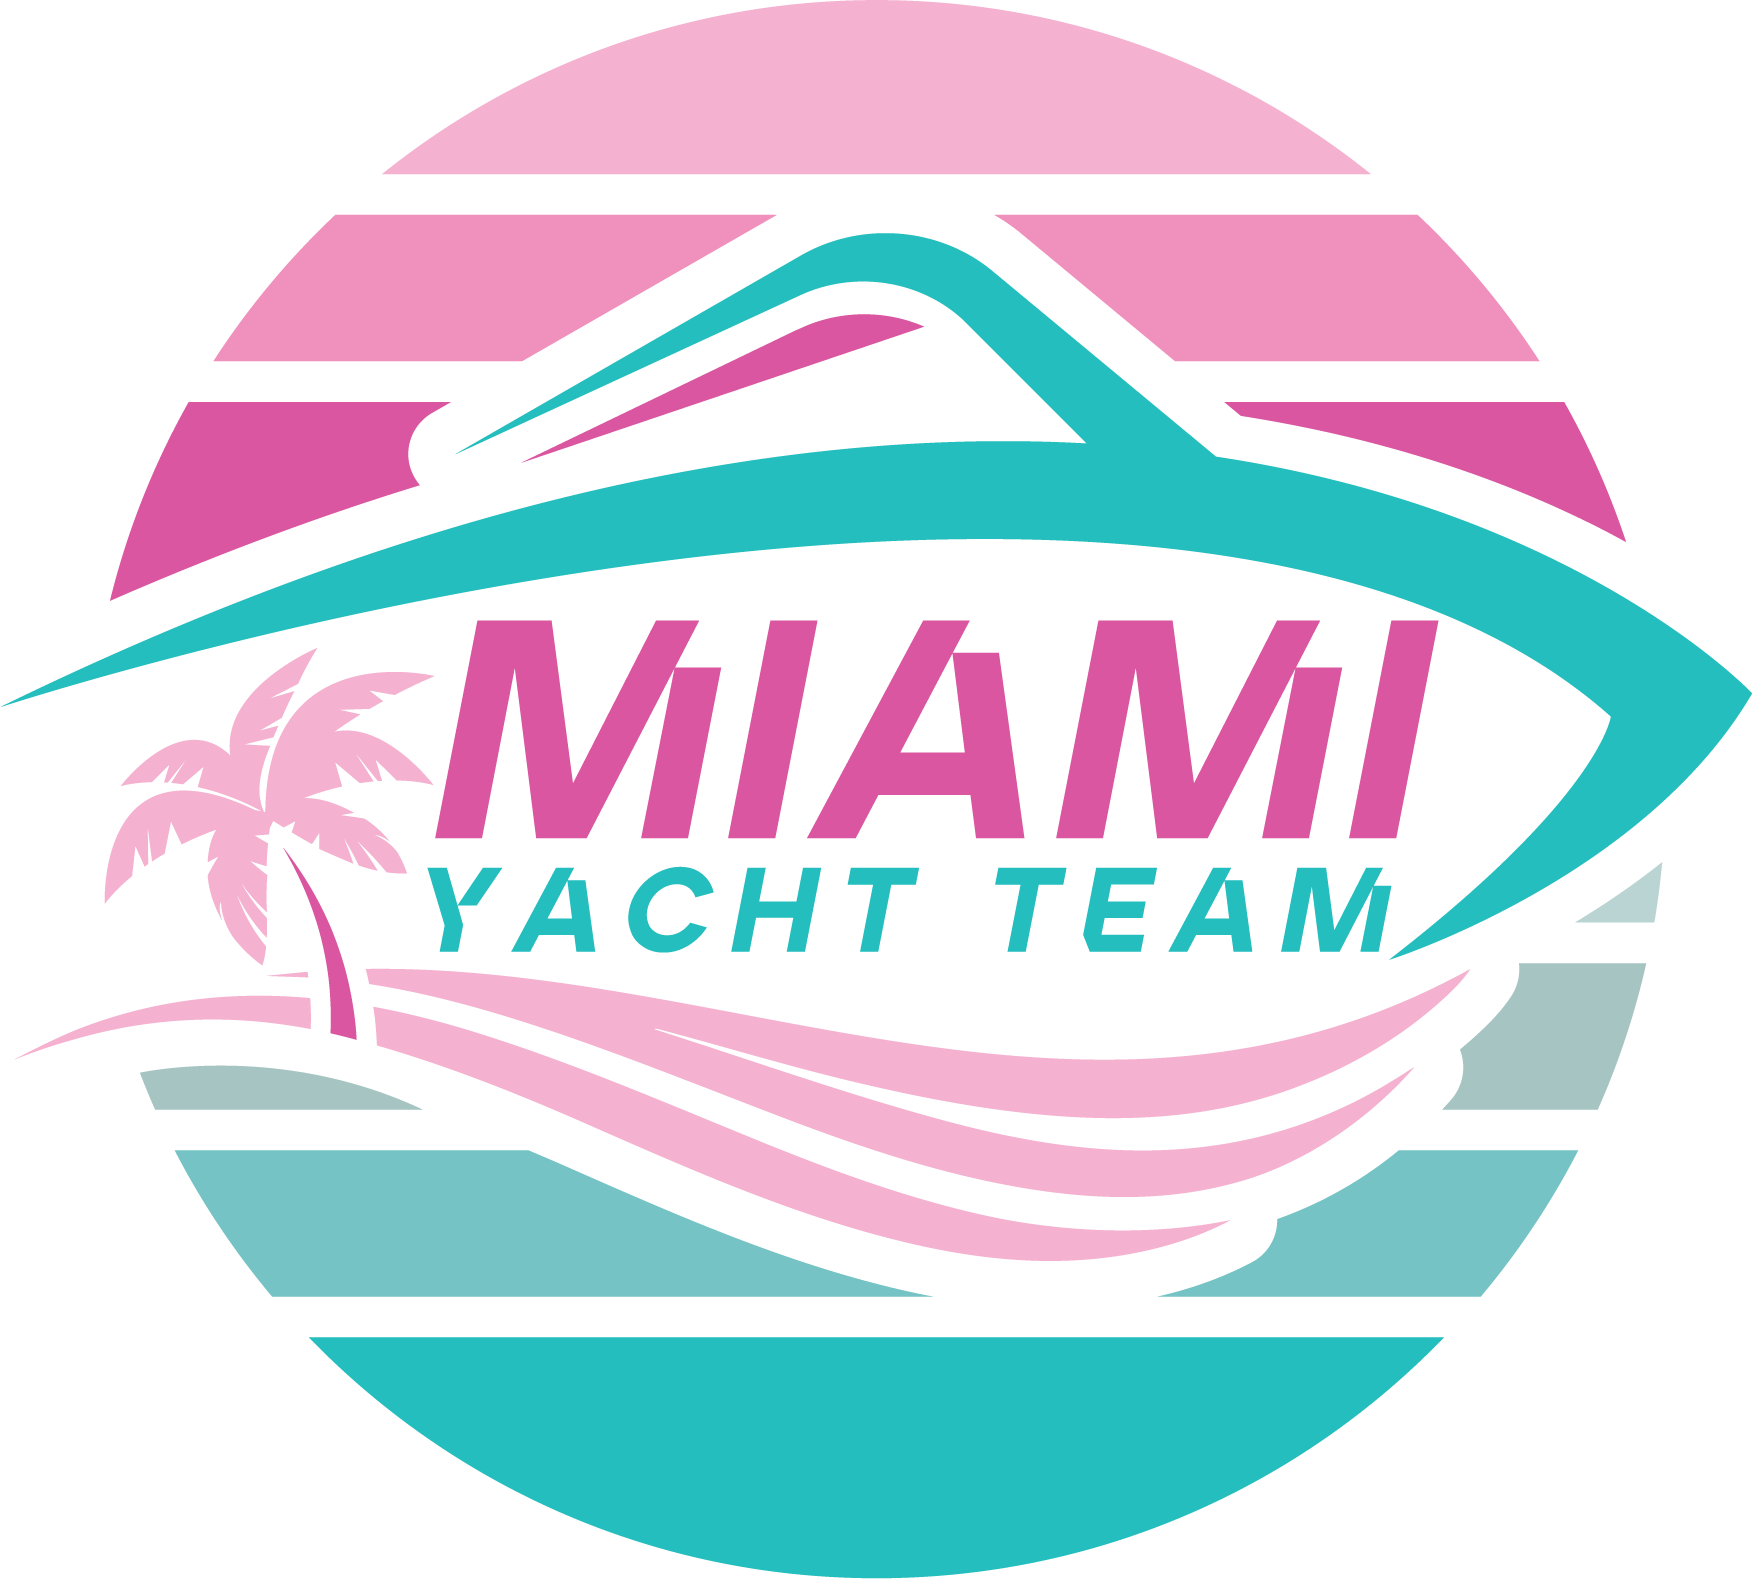 yacht team